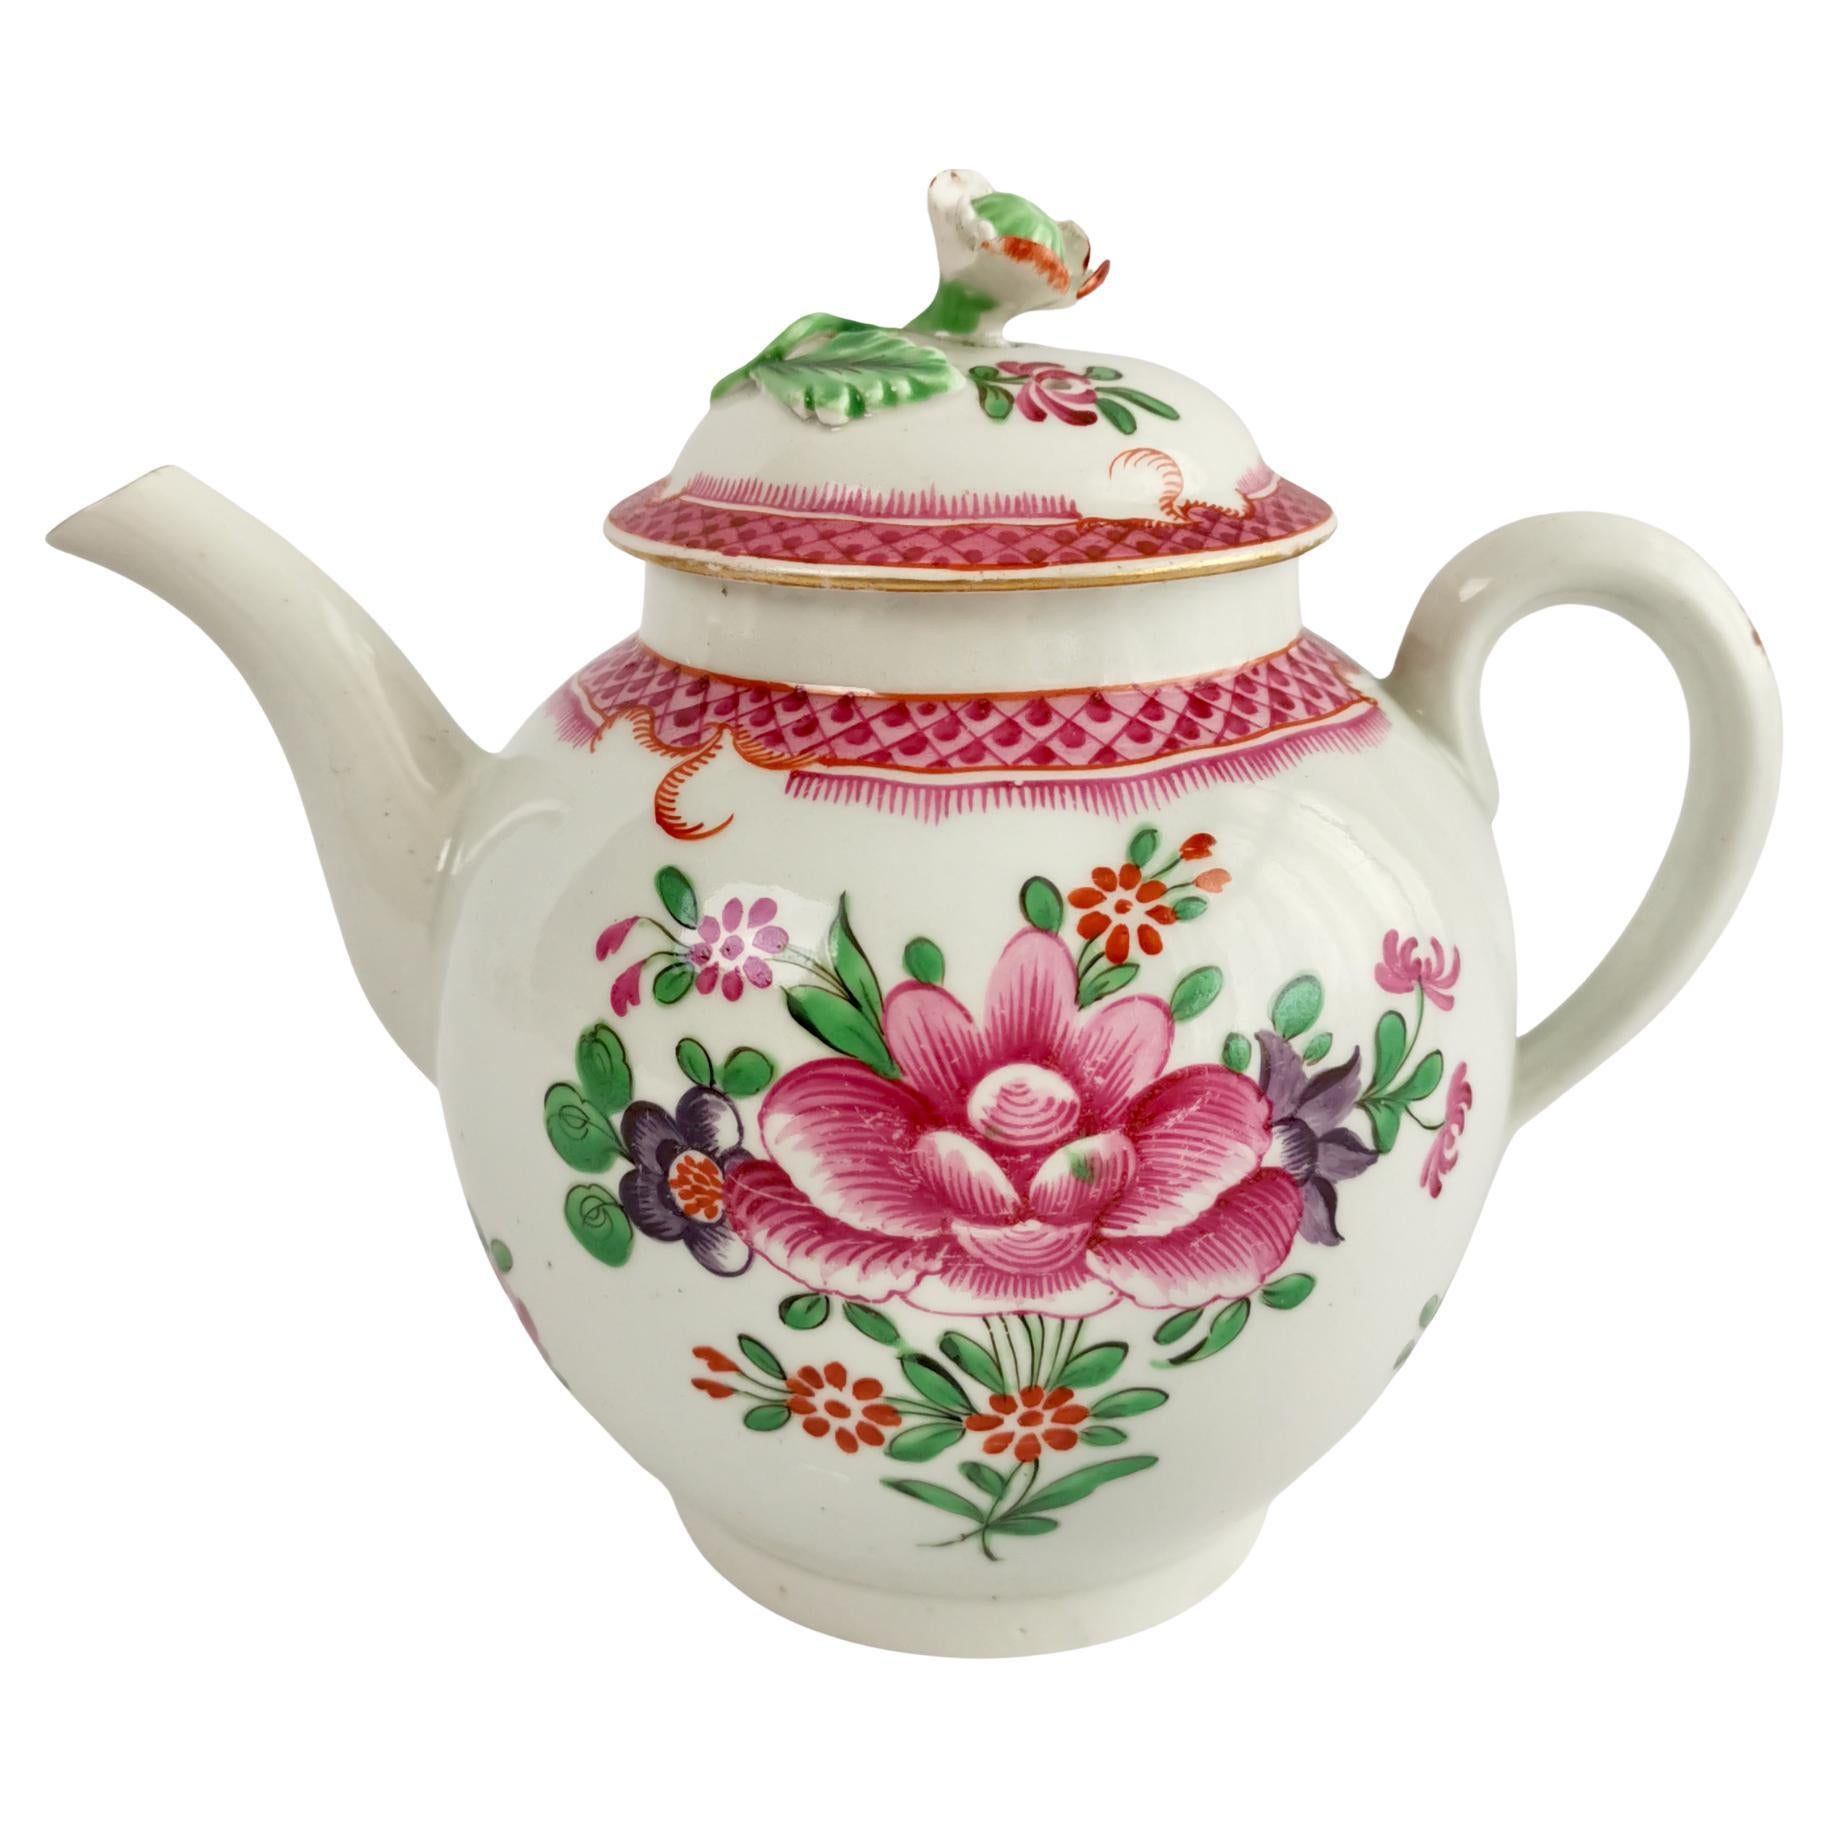 Caughley Porcelain Teapot, Pink Floral Compagnie des Indes, ca 1785